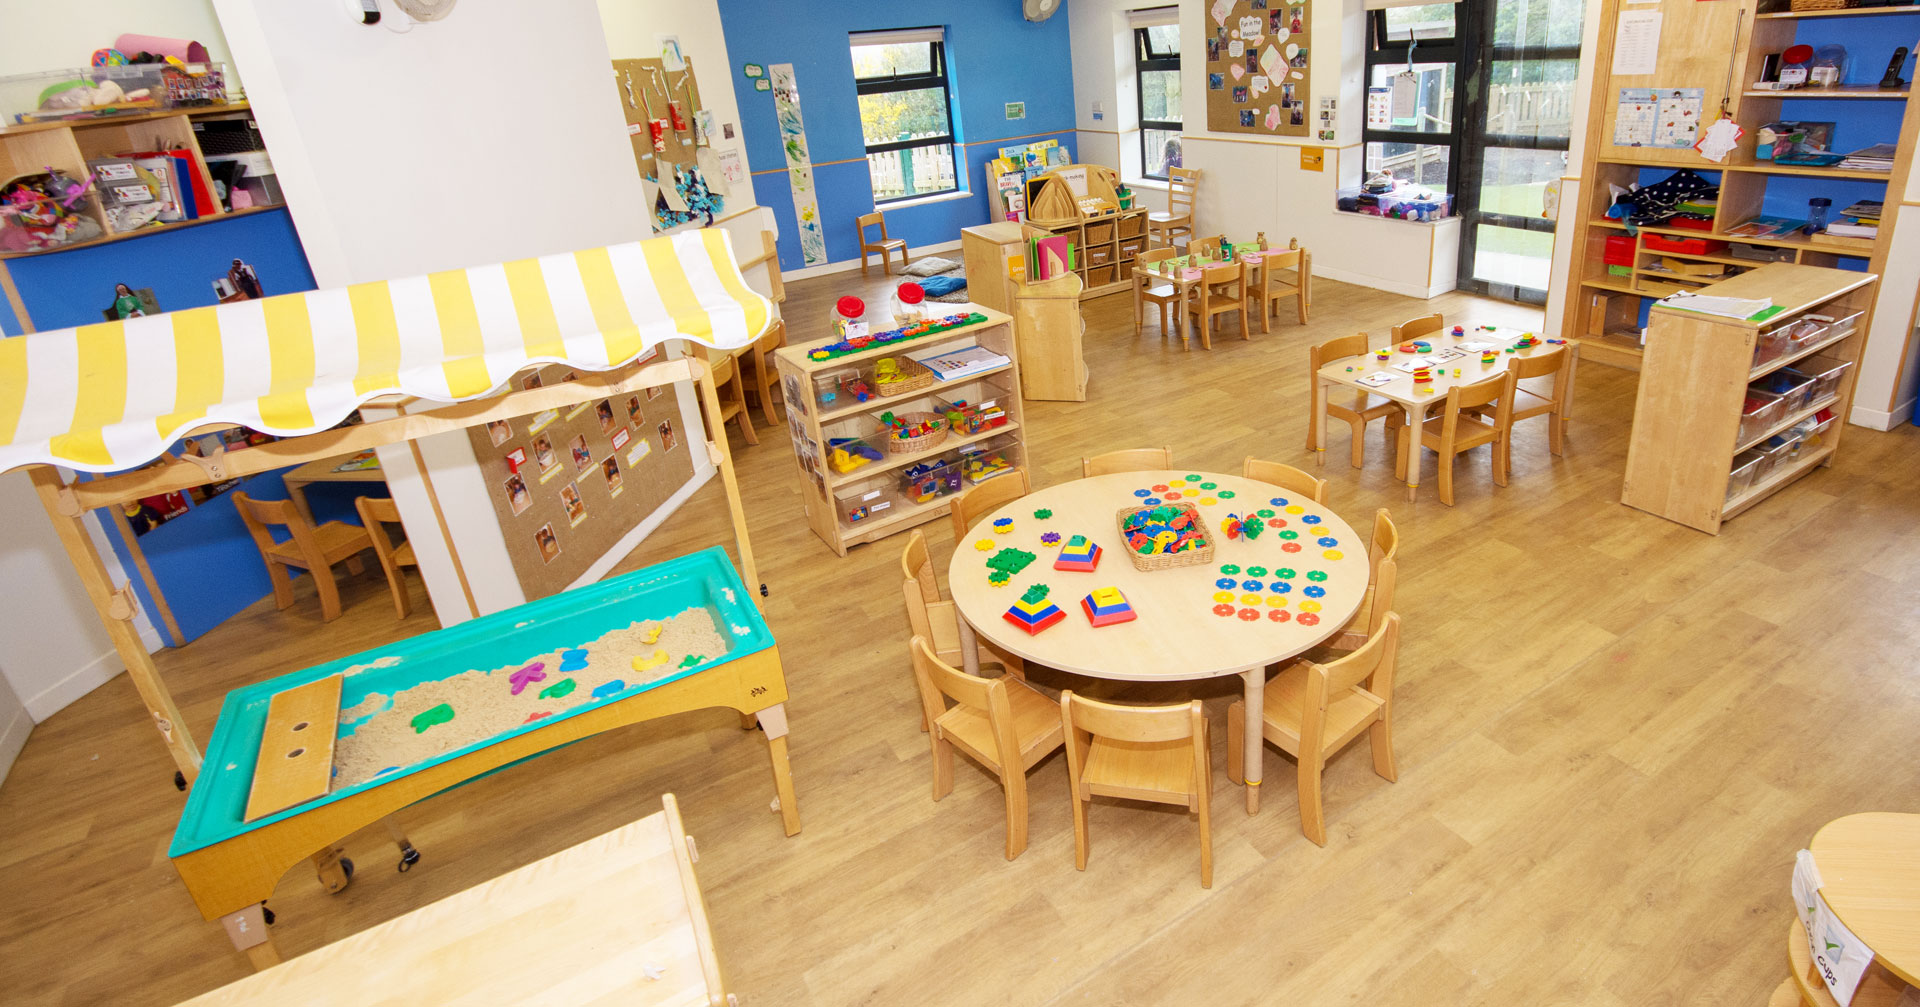 Fulbourn Day Nursery and Preschool